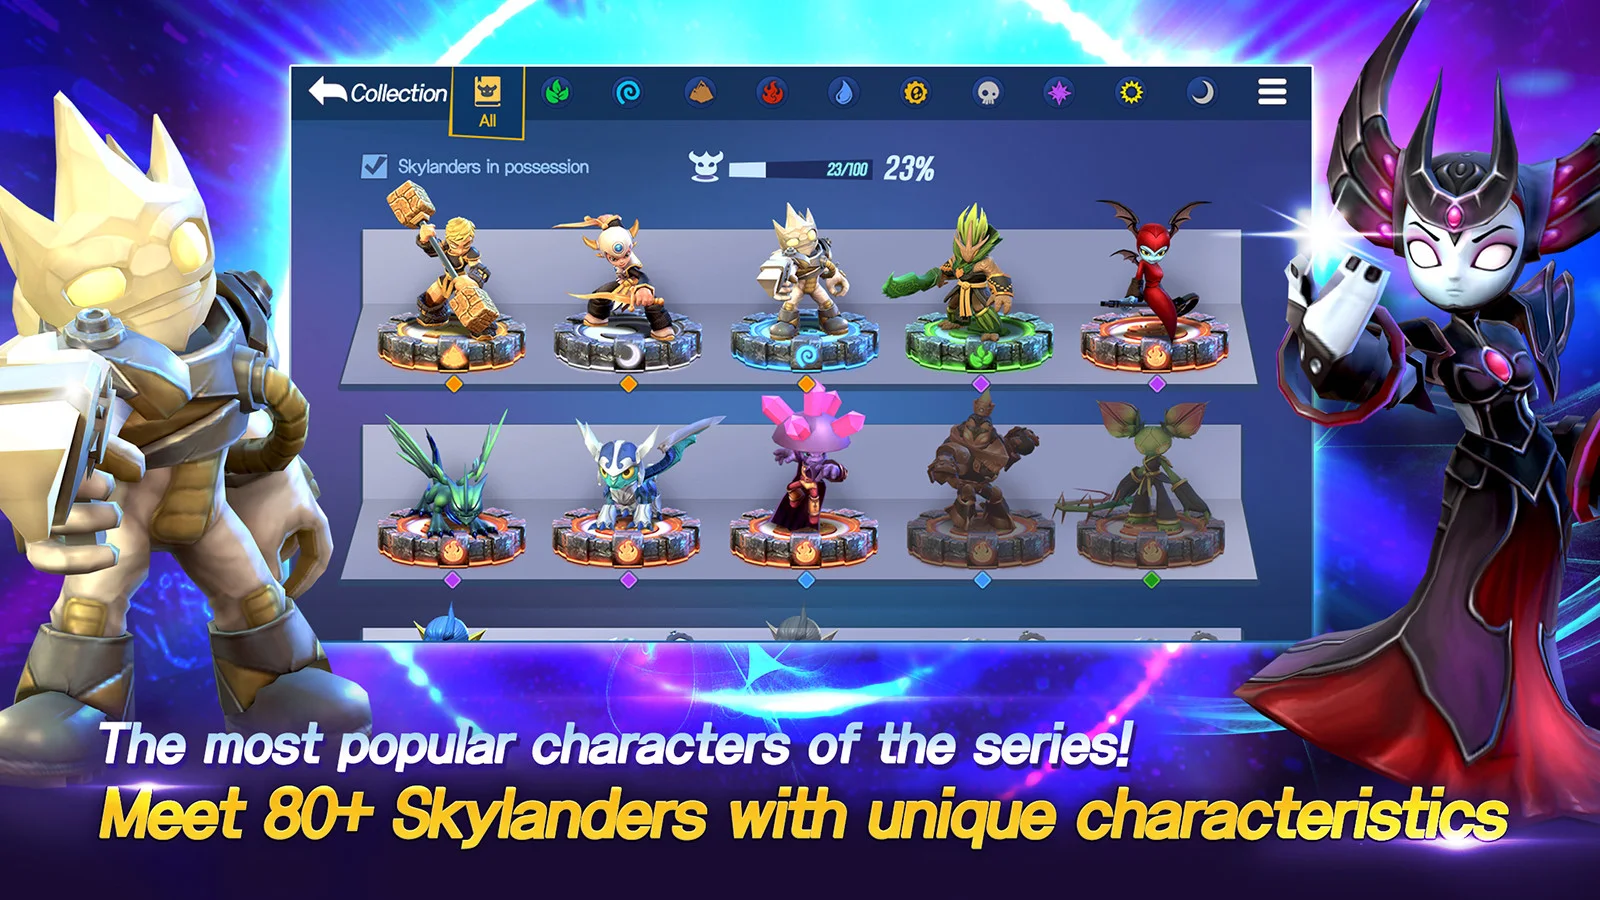 Skylanders™ Ring of Heroes